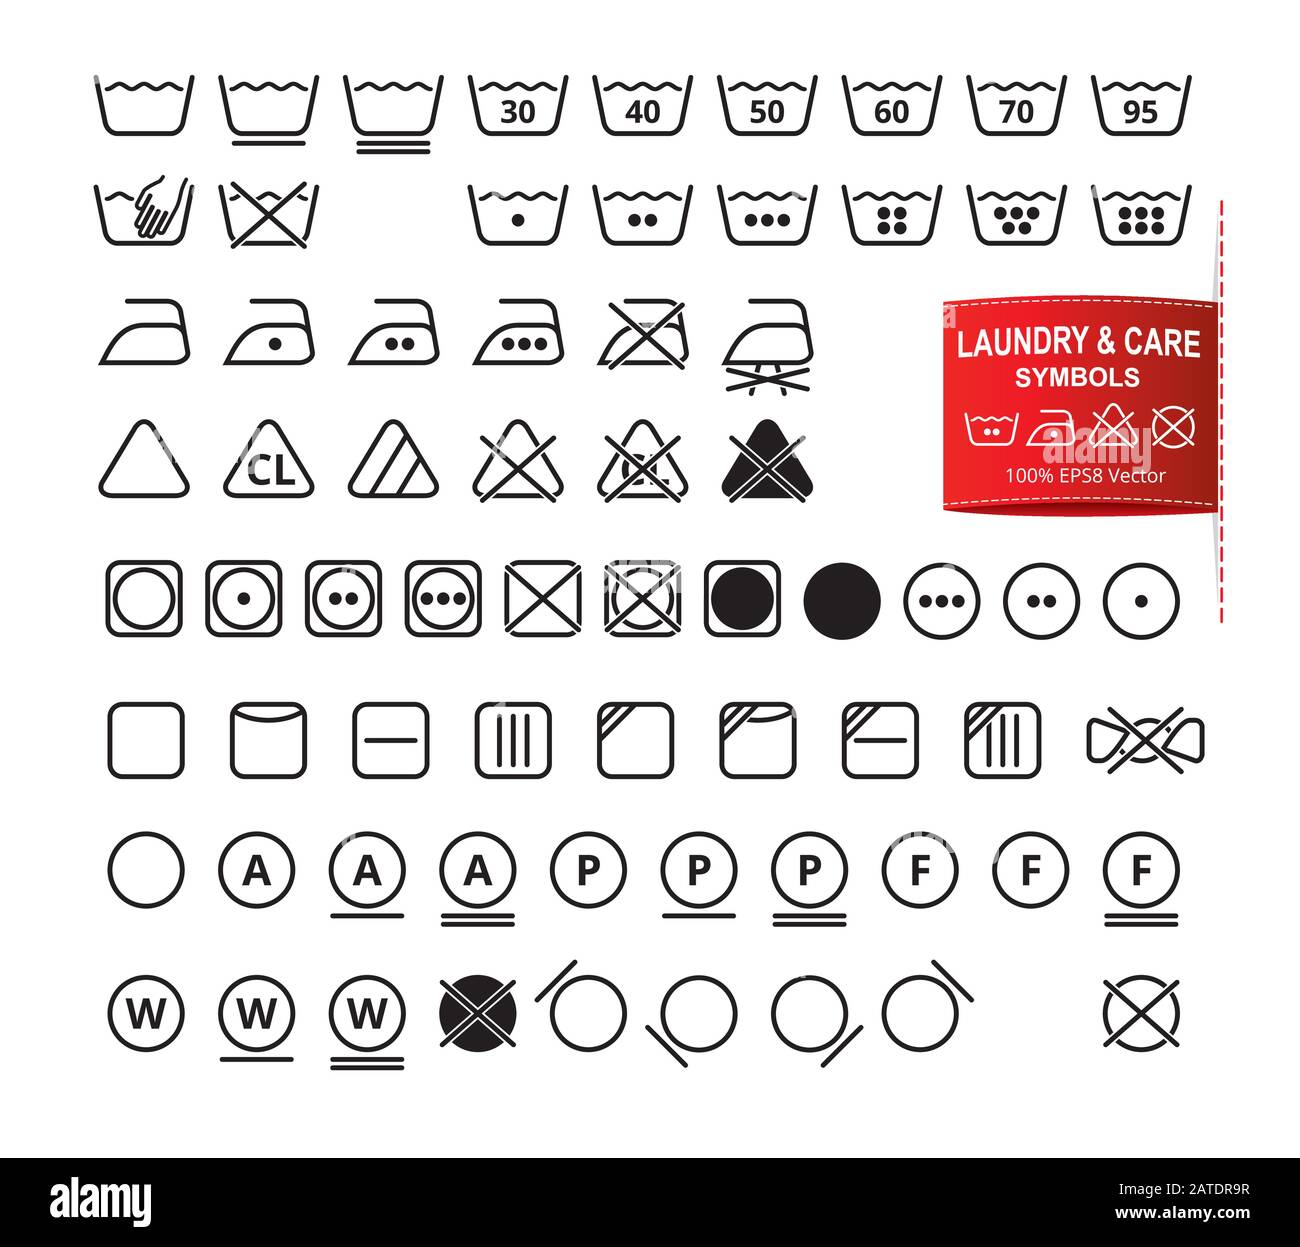 Conjunto de iconos de símbolos de lavandería en un estilo moderno de diseño plano de líneas Lavado ropa, blanqueo, secado, planchado, pictogramas de limpieza. Laboratorio de cuidado de la ropa